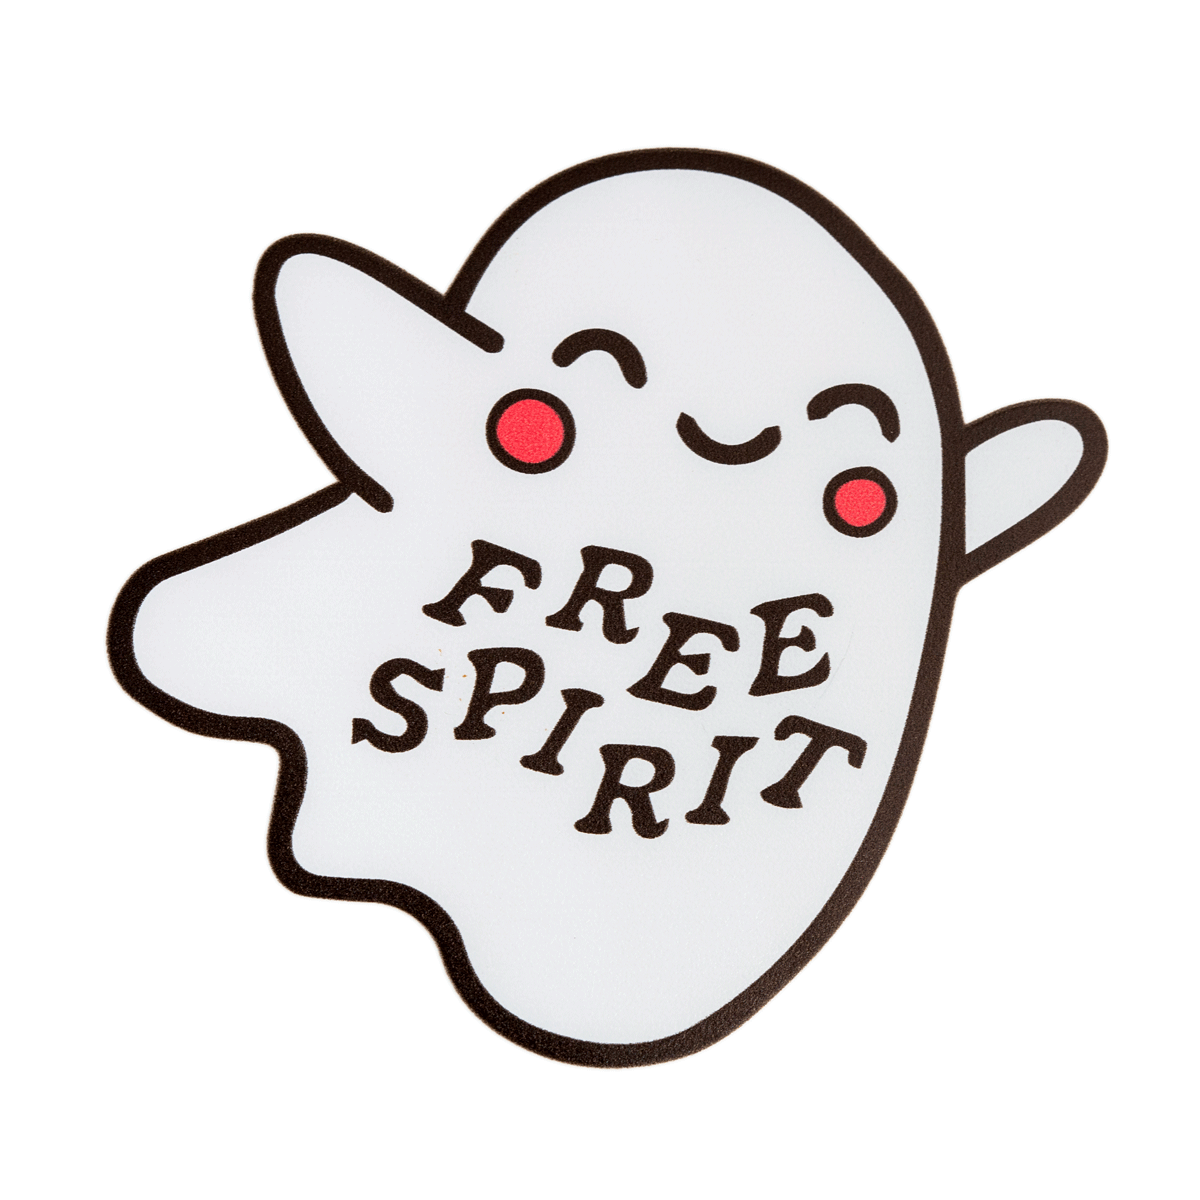 Free Spirit Bumper Sticker